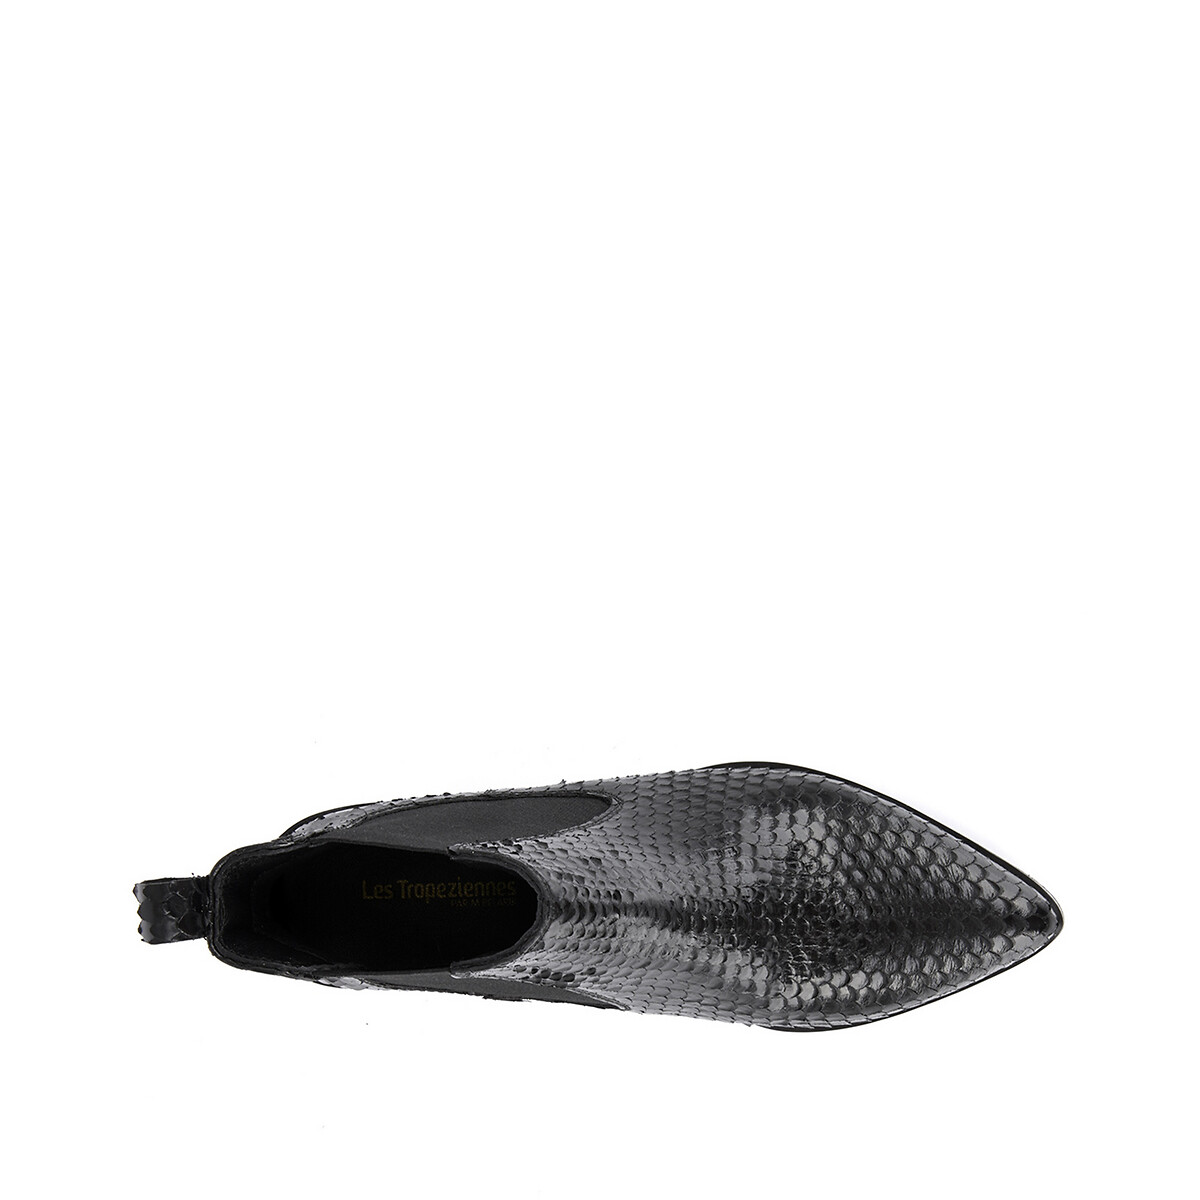 Ботинки La Redoute Под кожу питона Kiwi 37 черный, размер 37 - фото 3